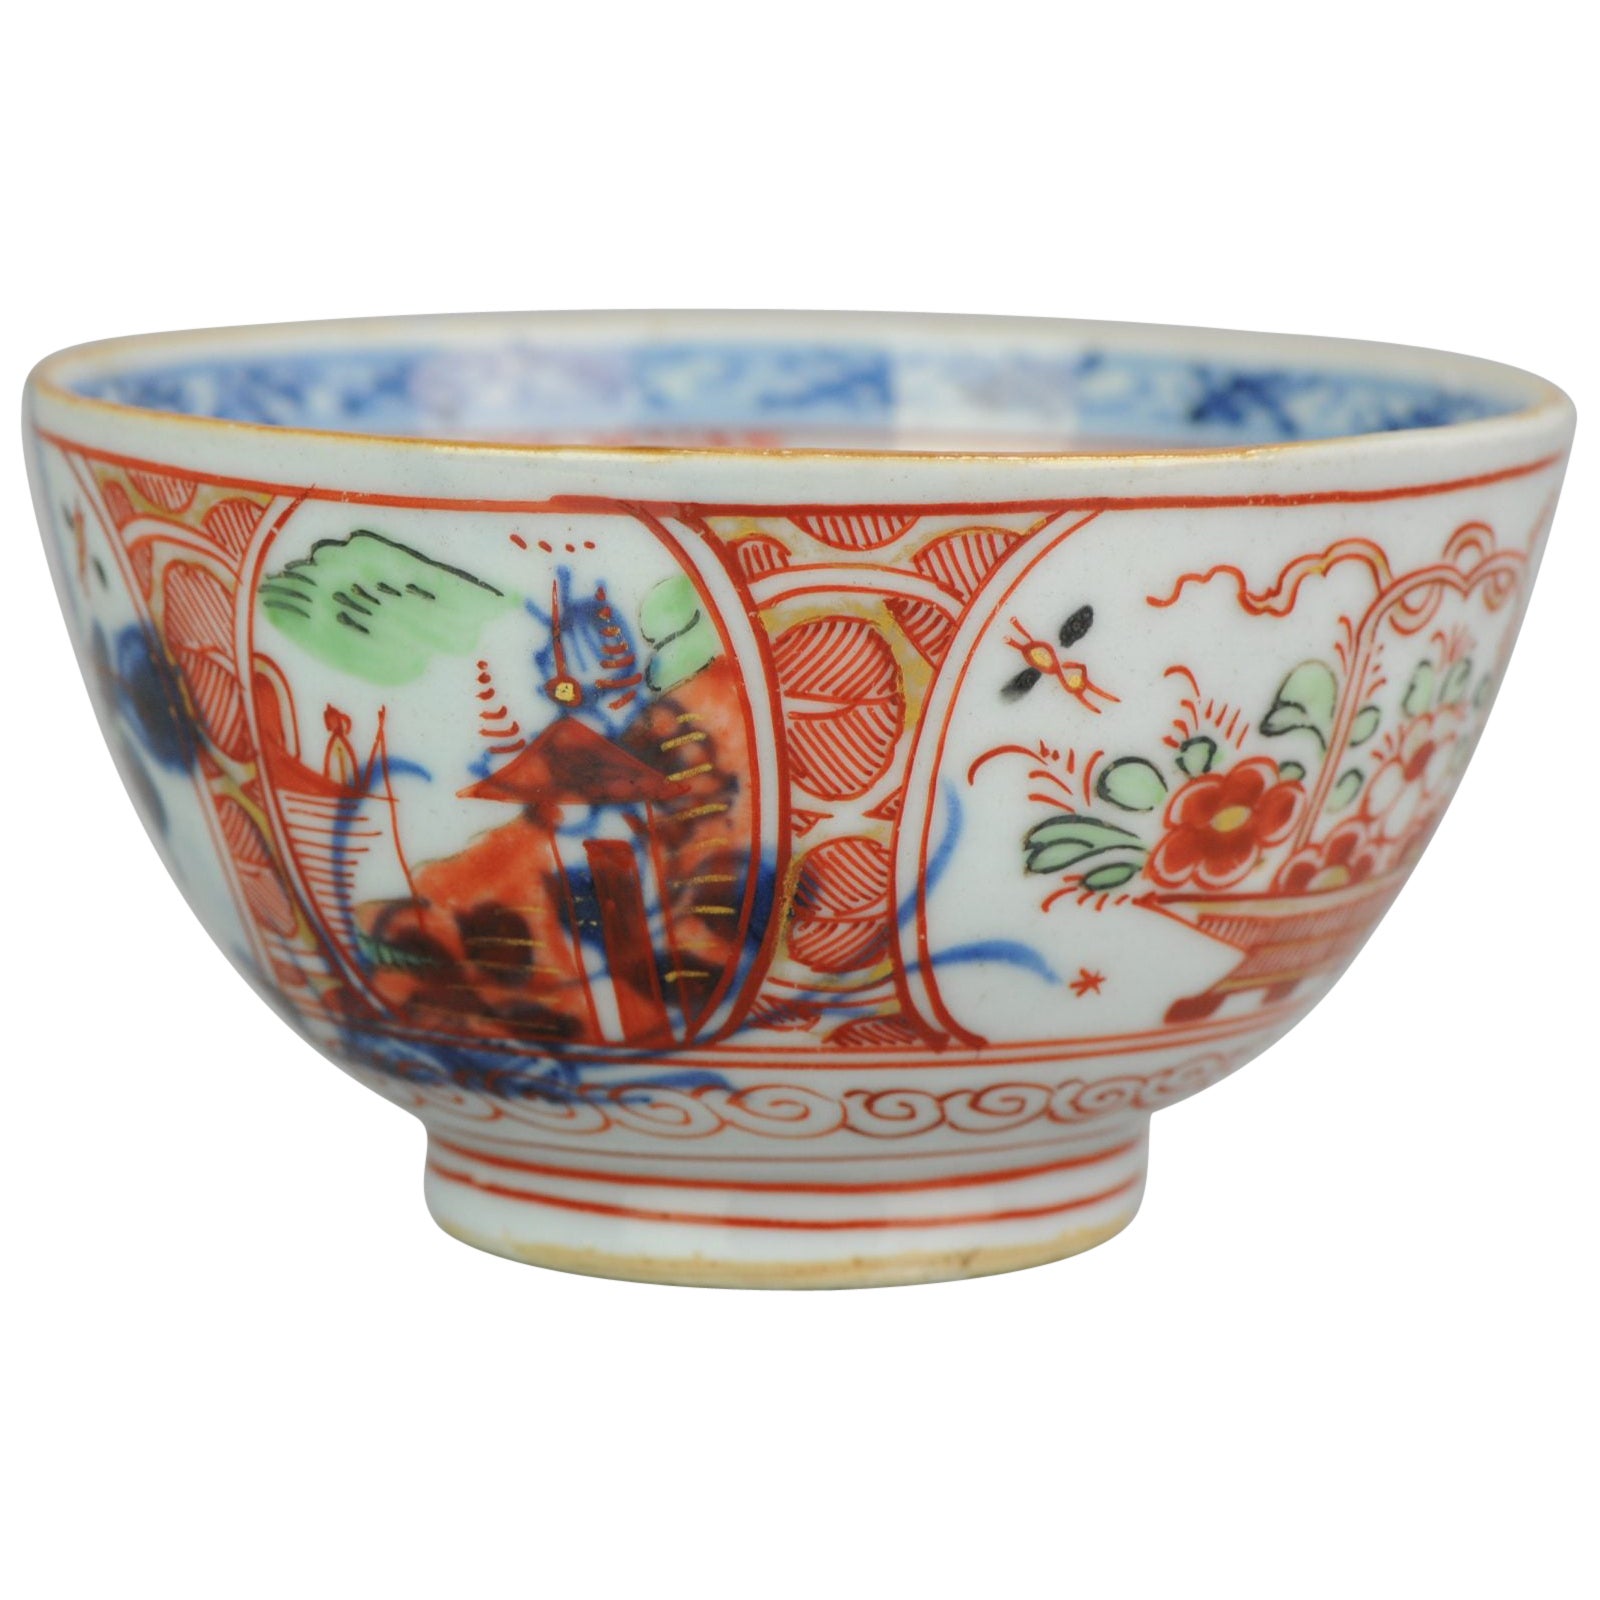 Antique bol Amsterdams Bont en porcelaine chinoise de la dynastie Imari Qing, 18e siècle